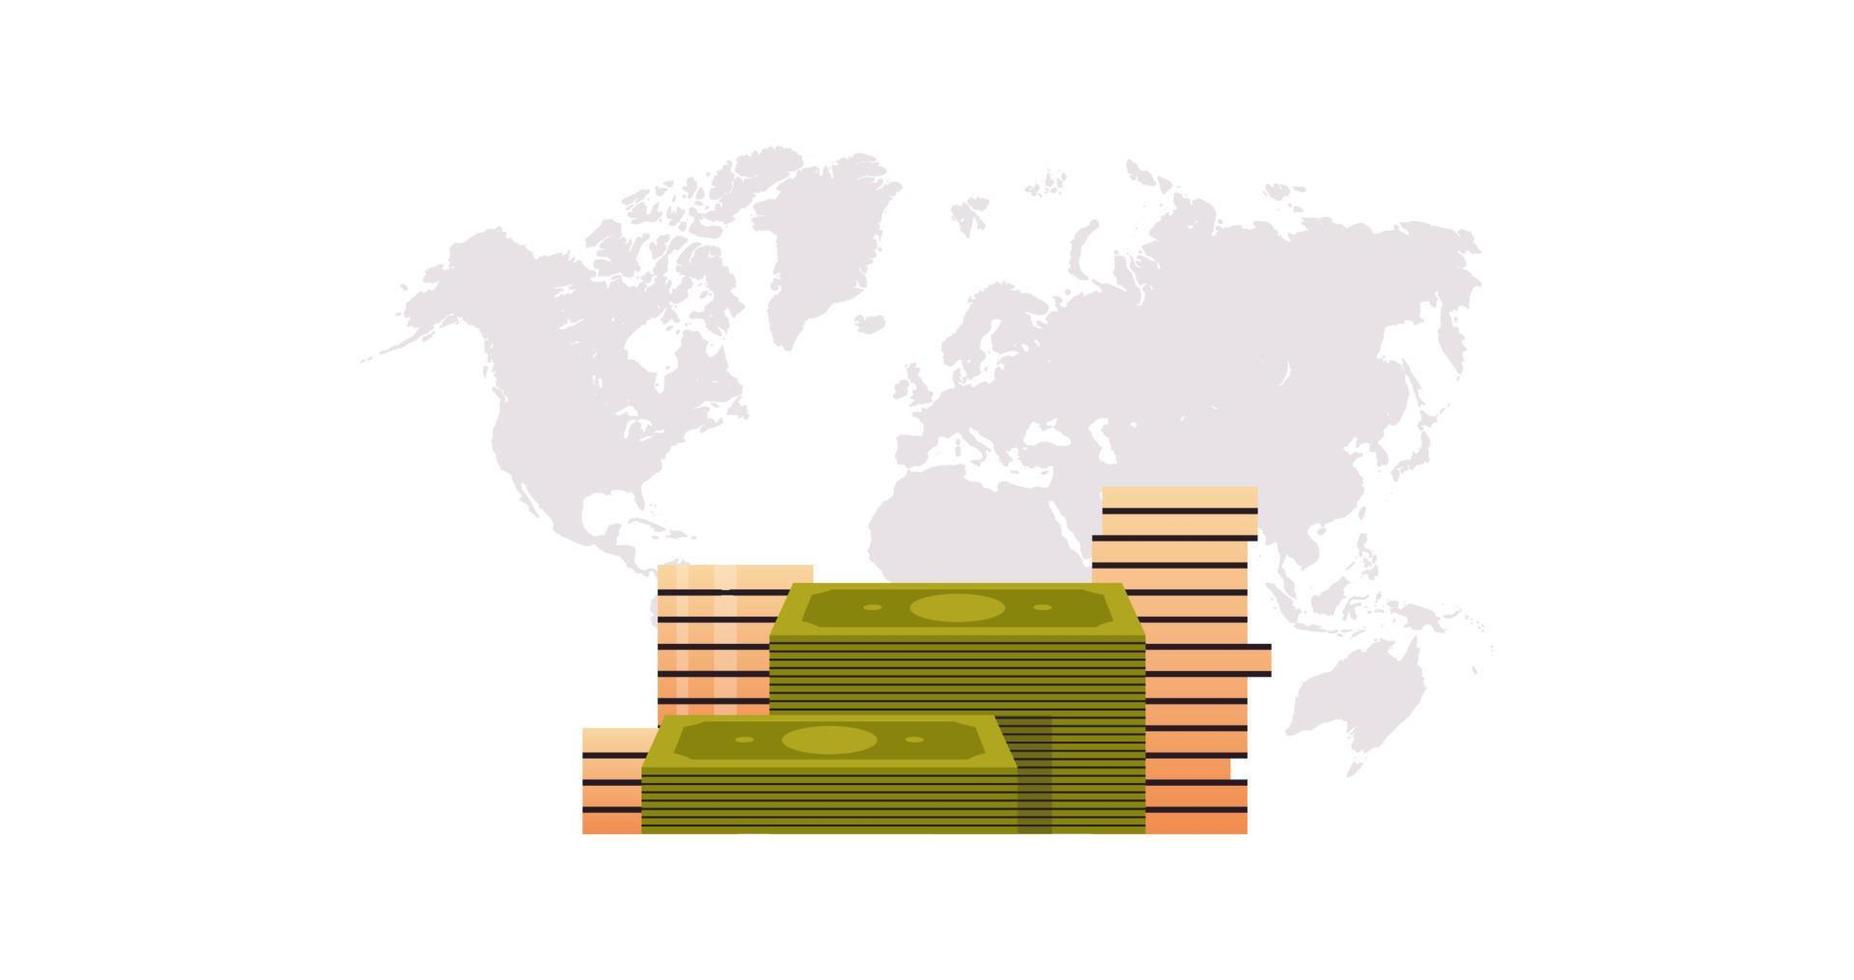 monete pila e banconota impilati i soldi, d'oro centesimo denaro contante mucchio su mondo carta geografica sfondo orizzontale piatto vettore illustrazione.